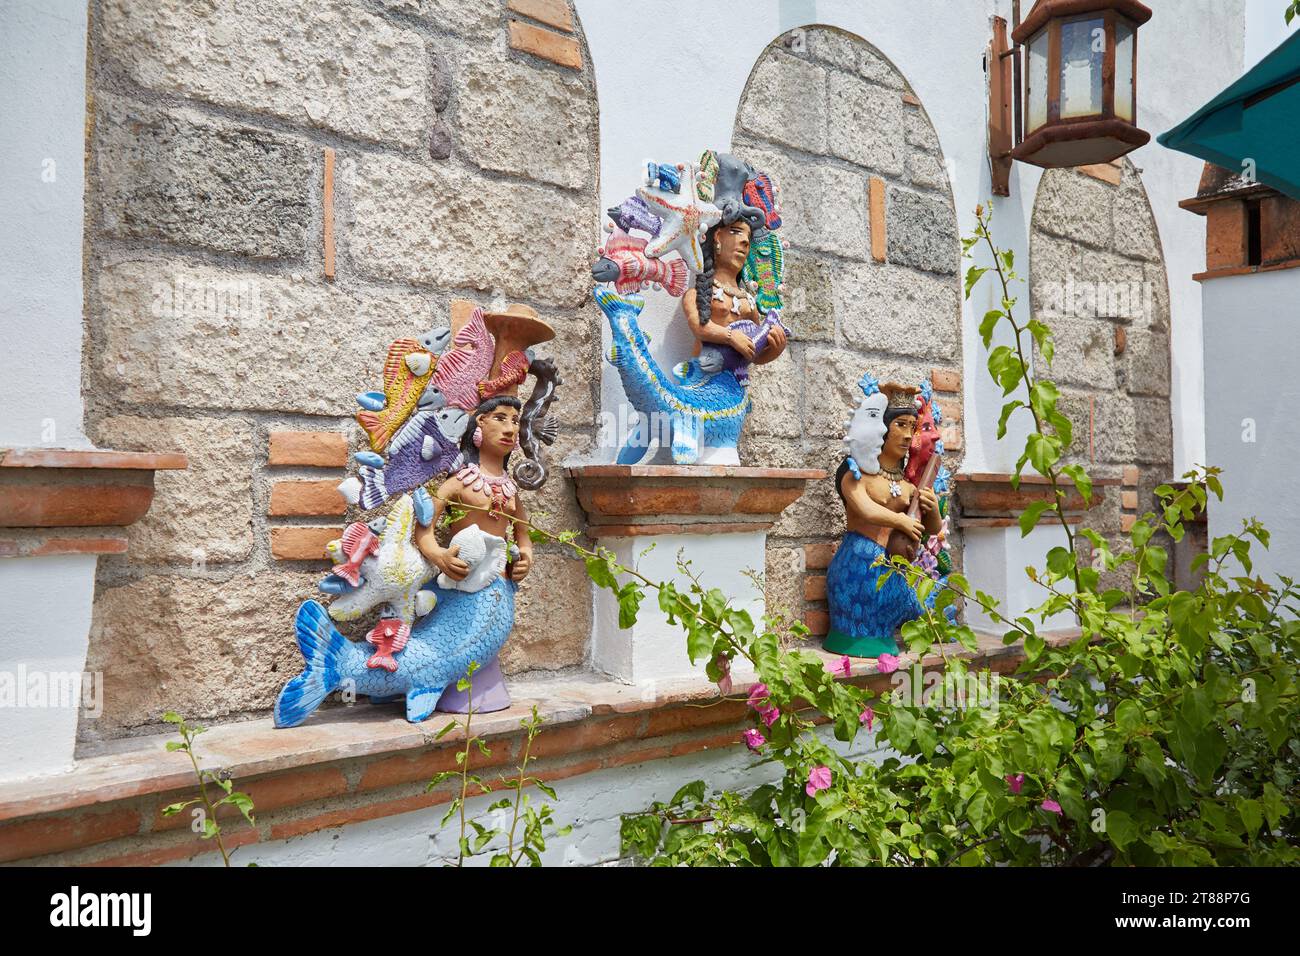 The scenic town of San Miguel de Allende in Guanajuato, Mexico Stock Photo